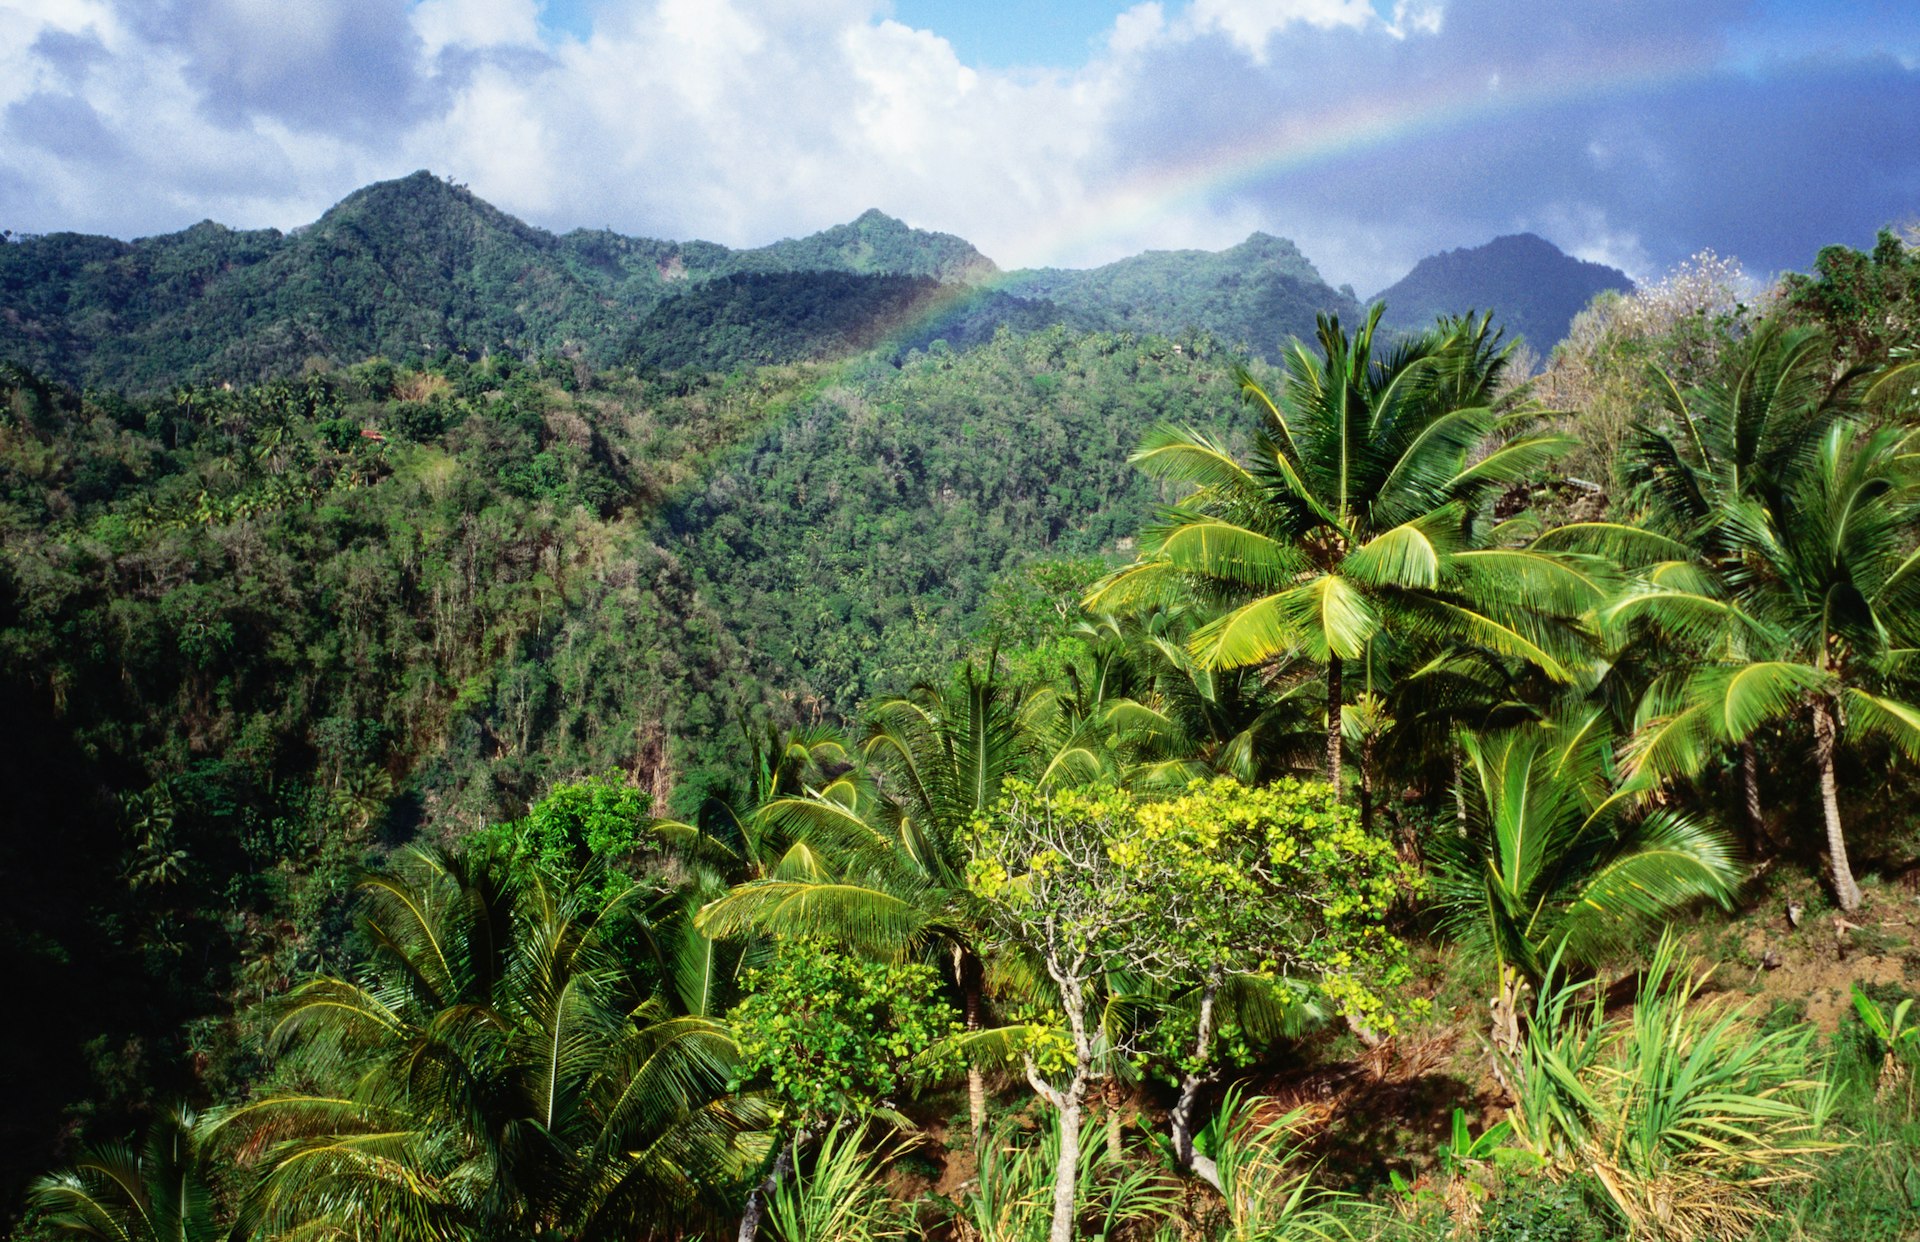 Rainbow in rainforest, Belvedere.